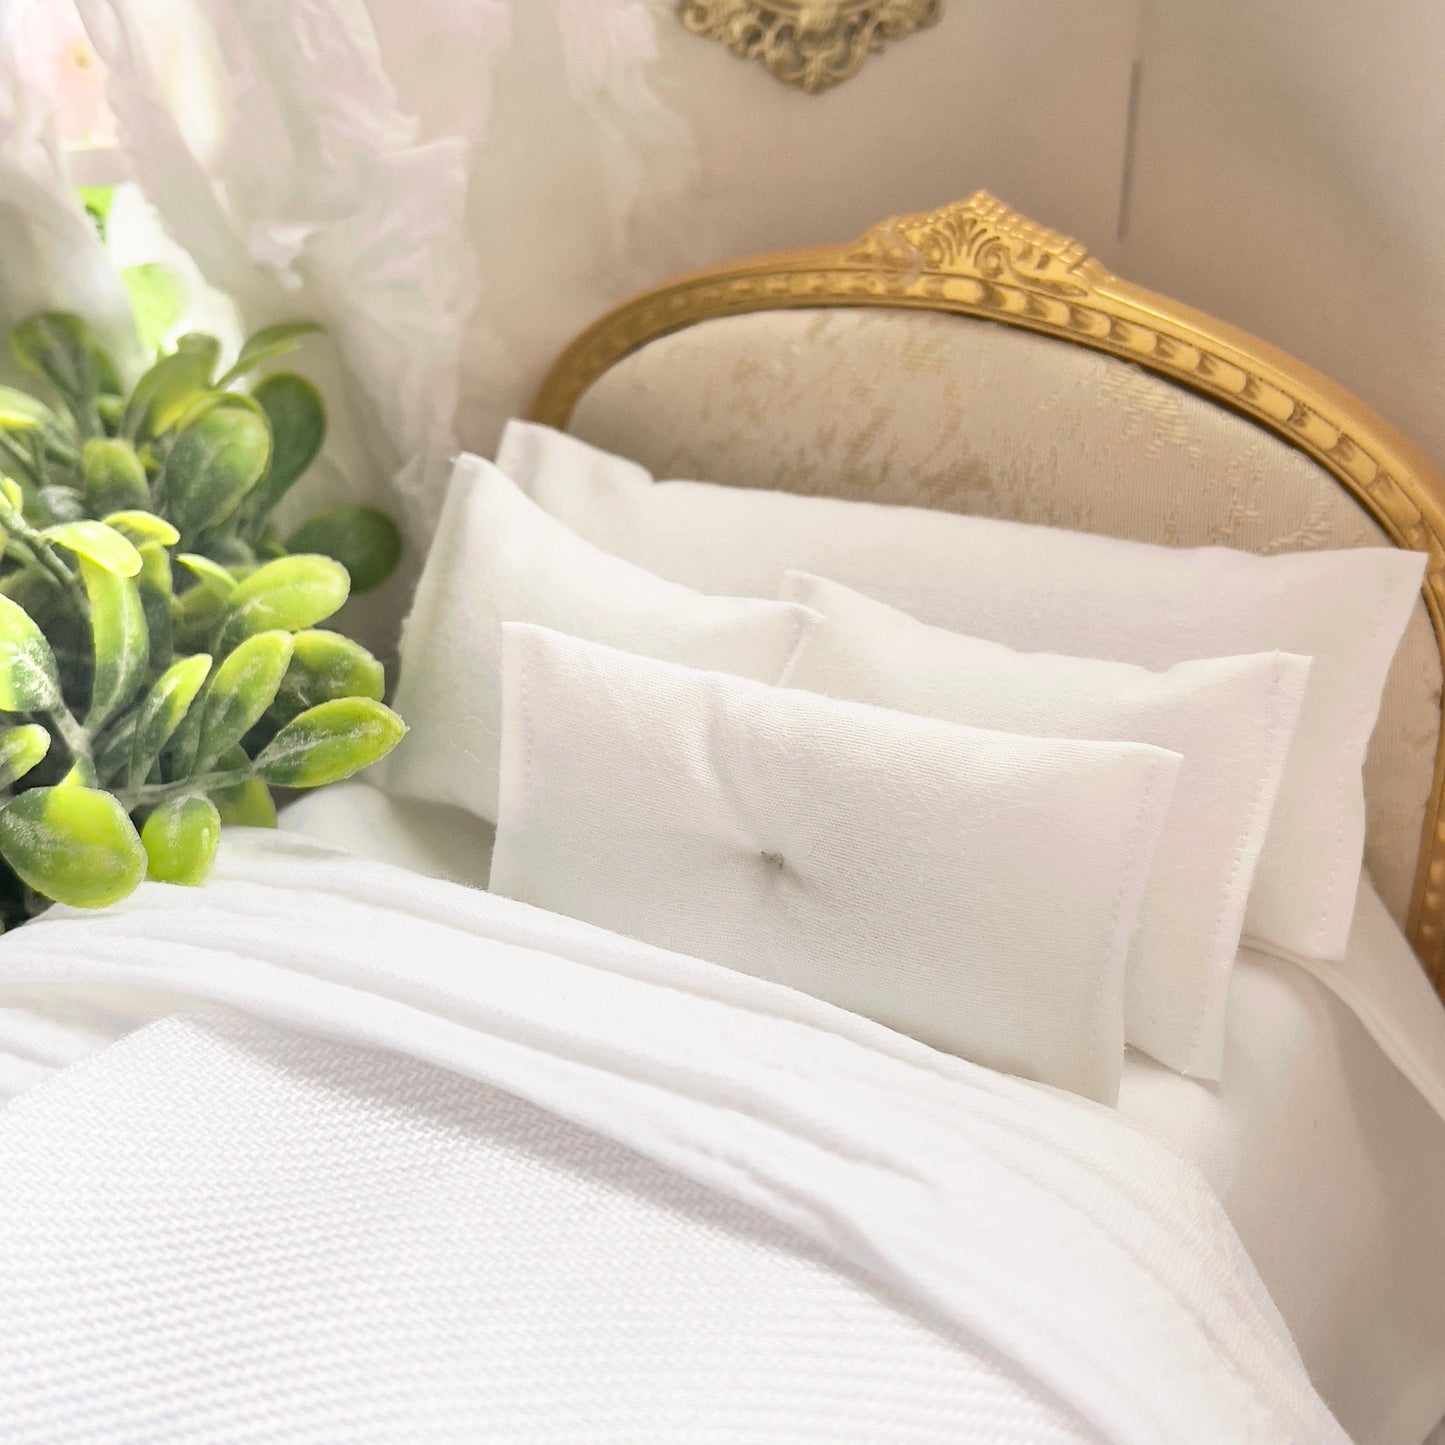 Chantallena White Bed Linens Boundless White -Seven Piece White Cotton Bedding Set with Pashmina Style Throw | Modern White